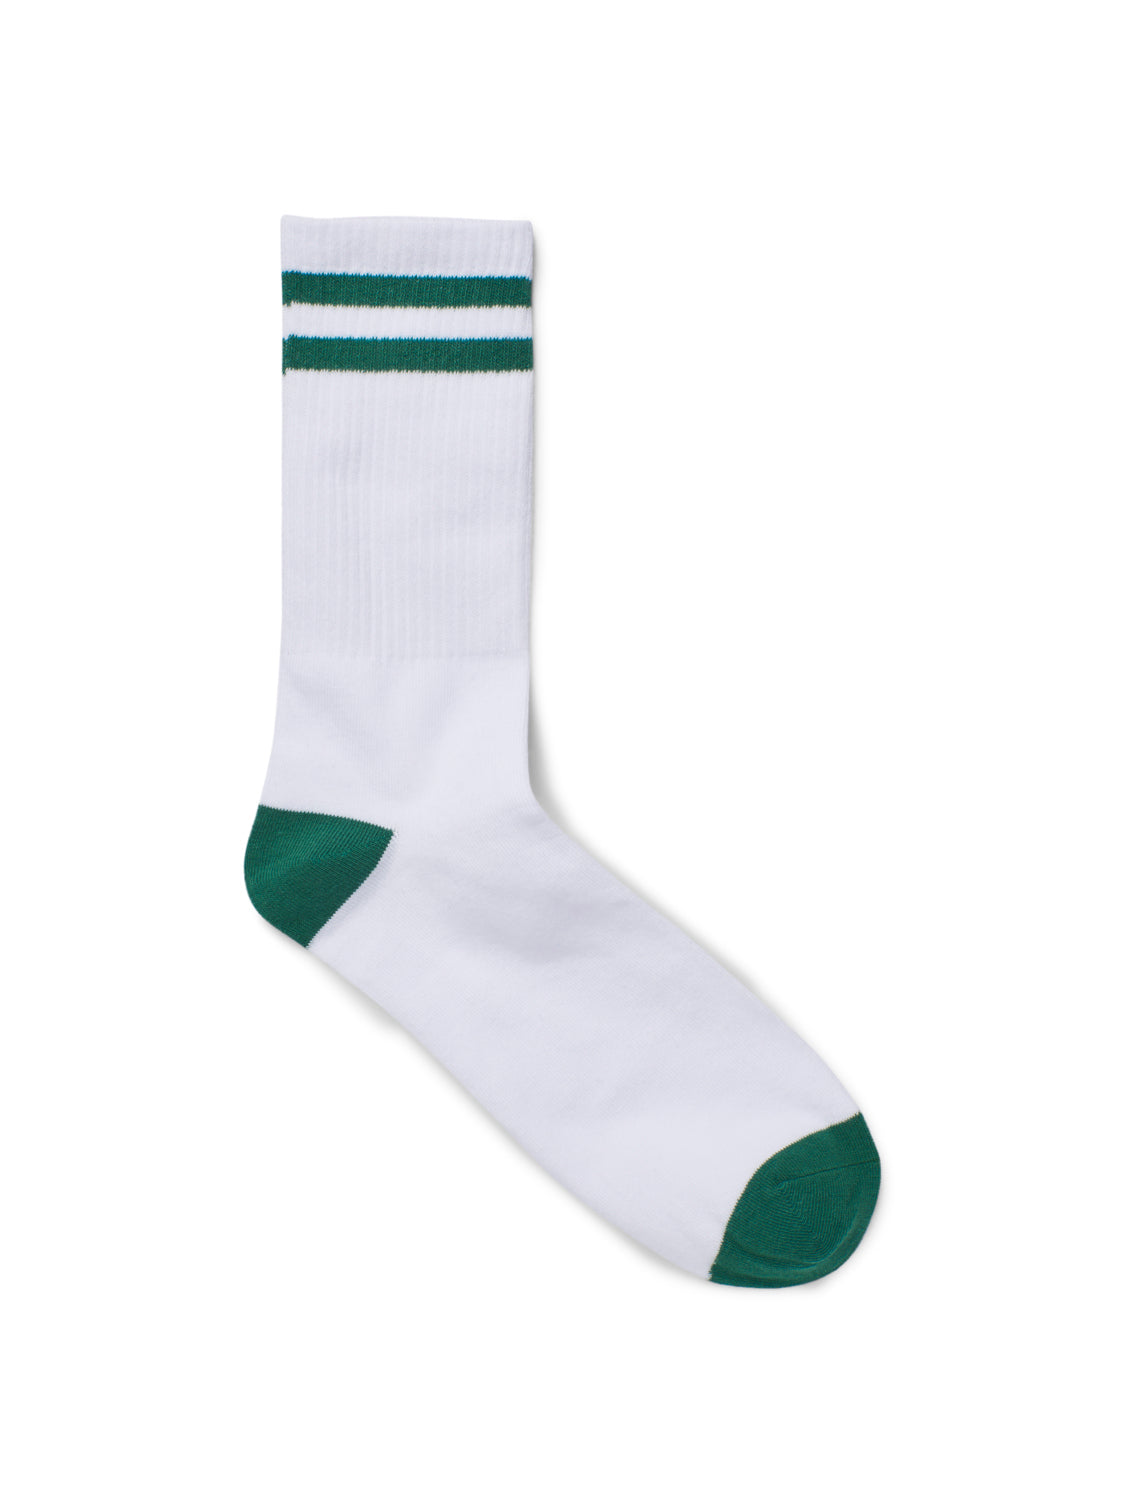 JACBASIC Socks - Evergreen